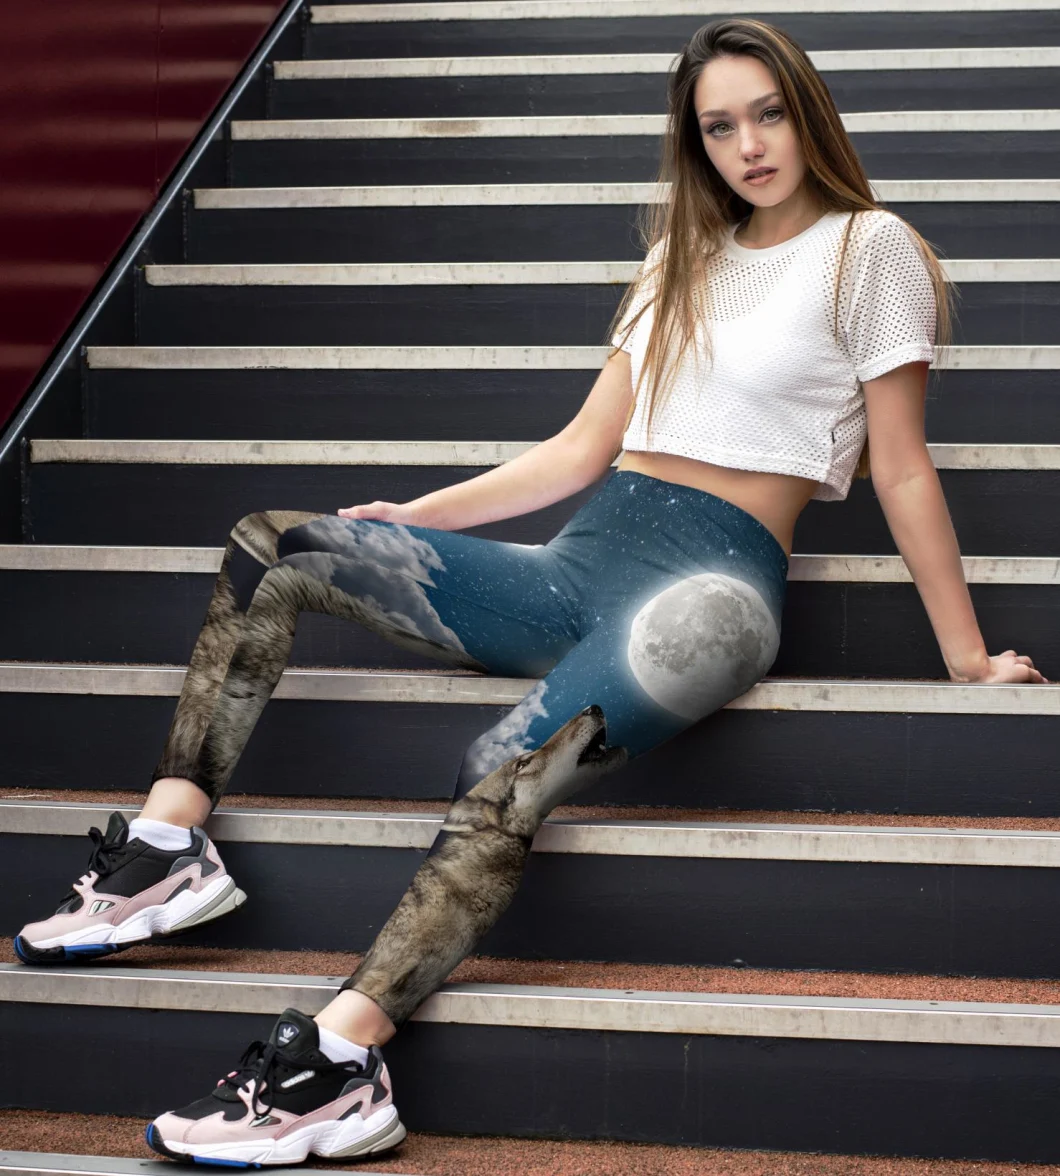 Custom Sports Wear Printed Yoga Leggings Wholesale Patterned Leggings for Women Fitness